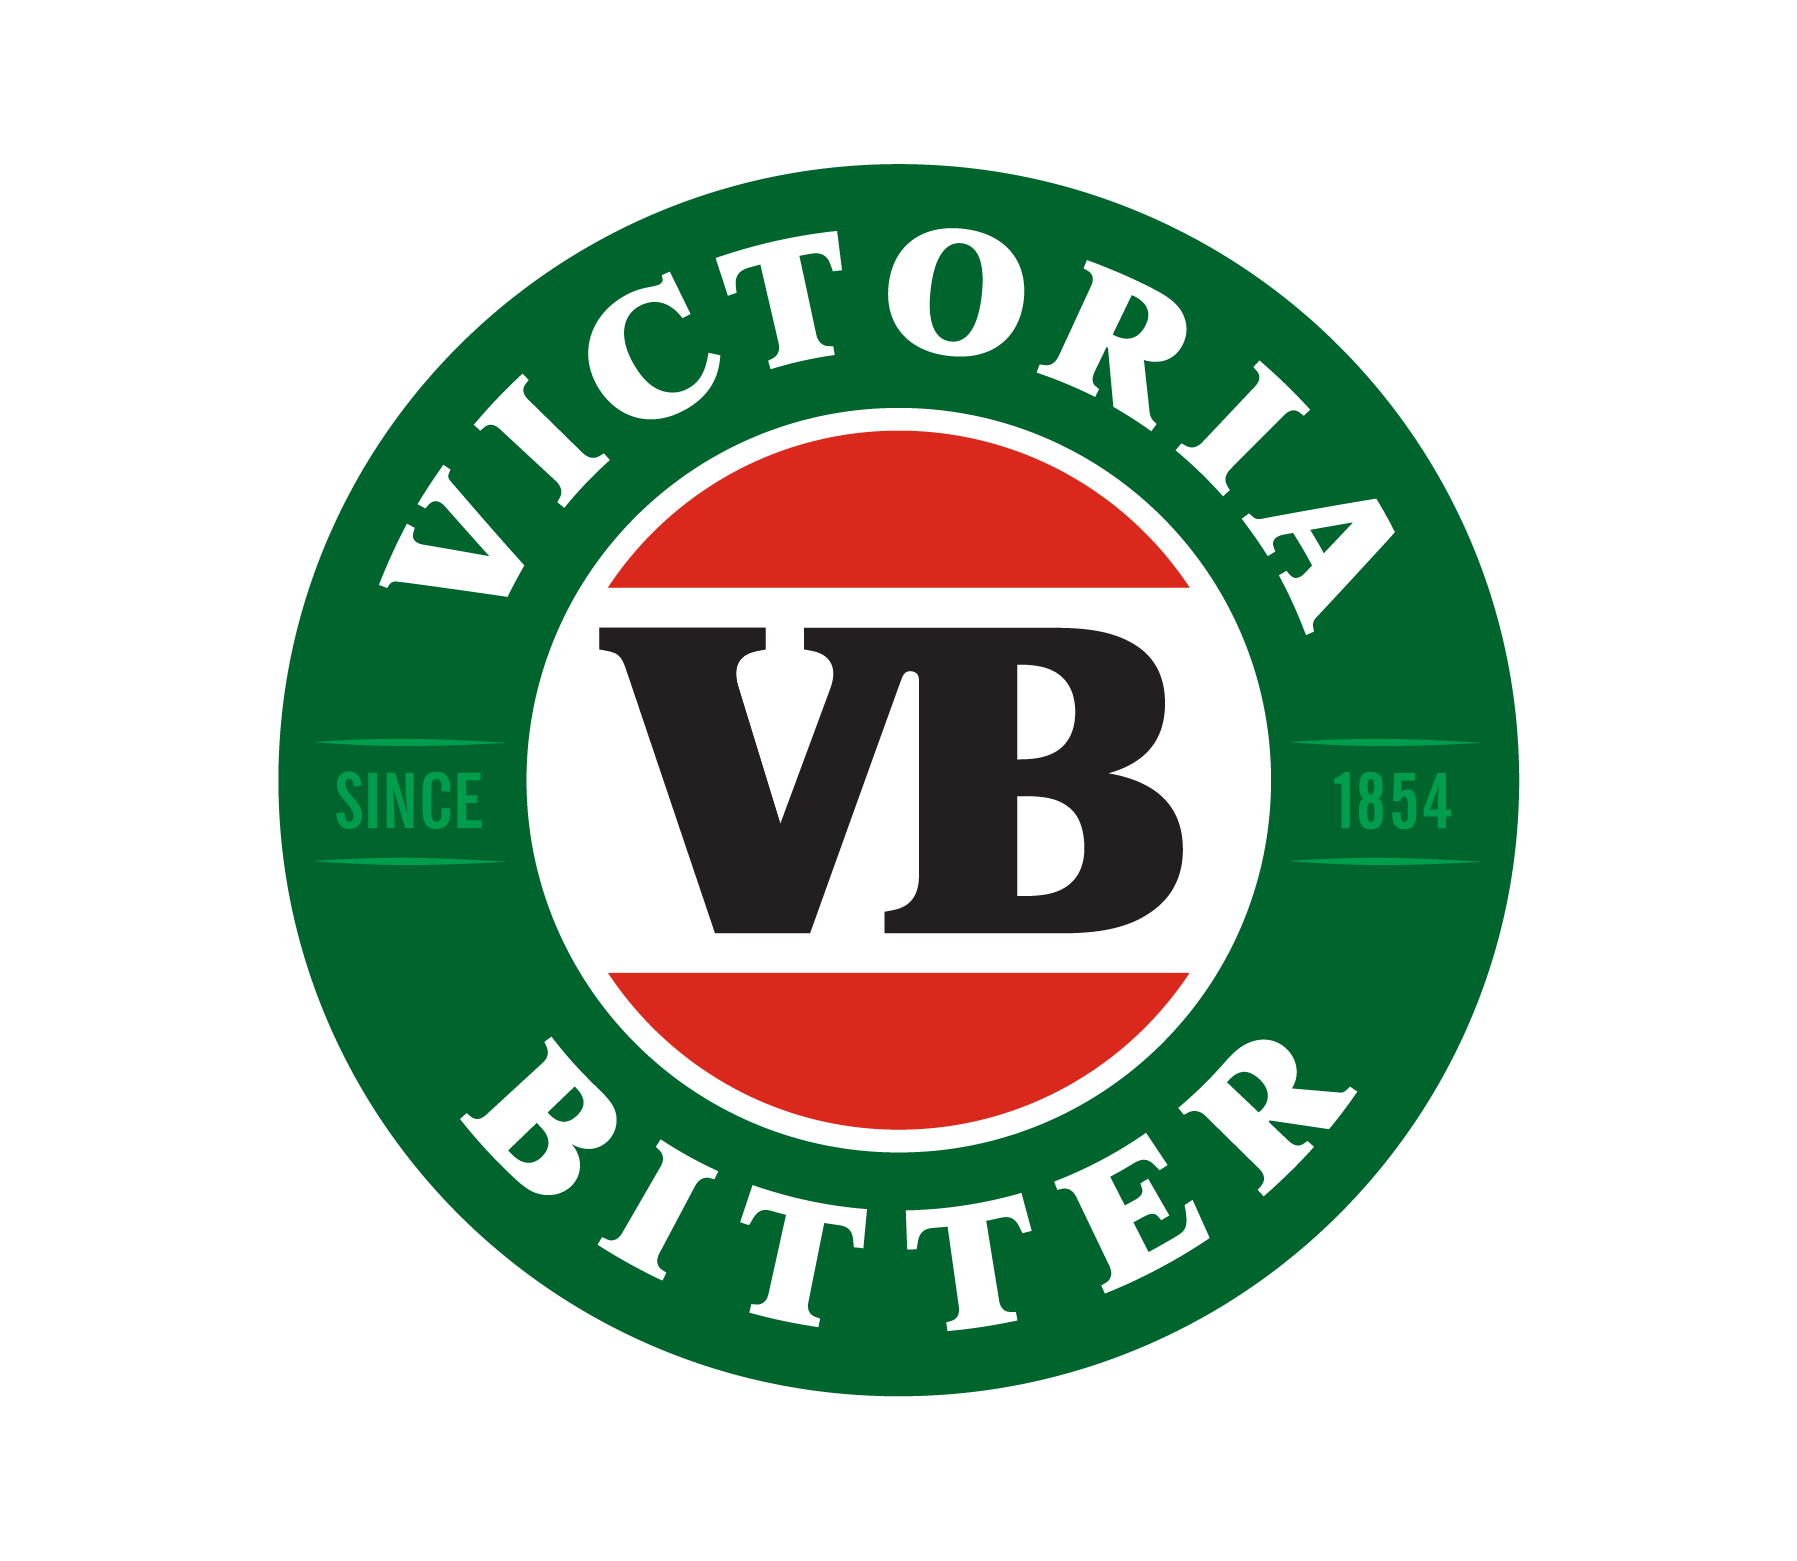 VB Logo - Big Cold Beer Poster – Victoria Bitter